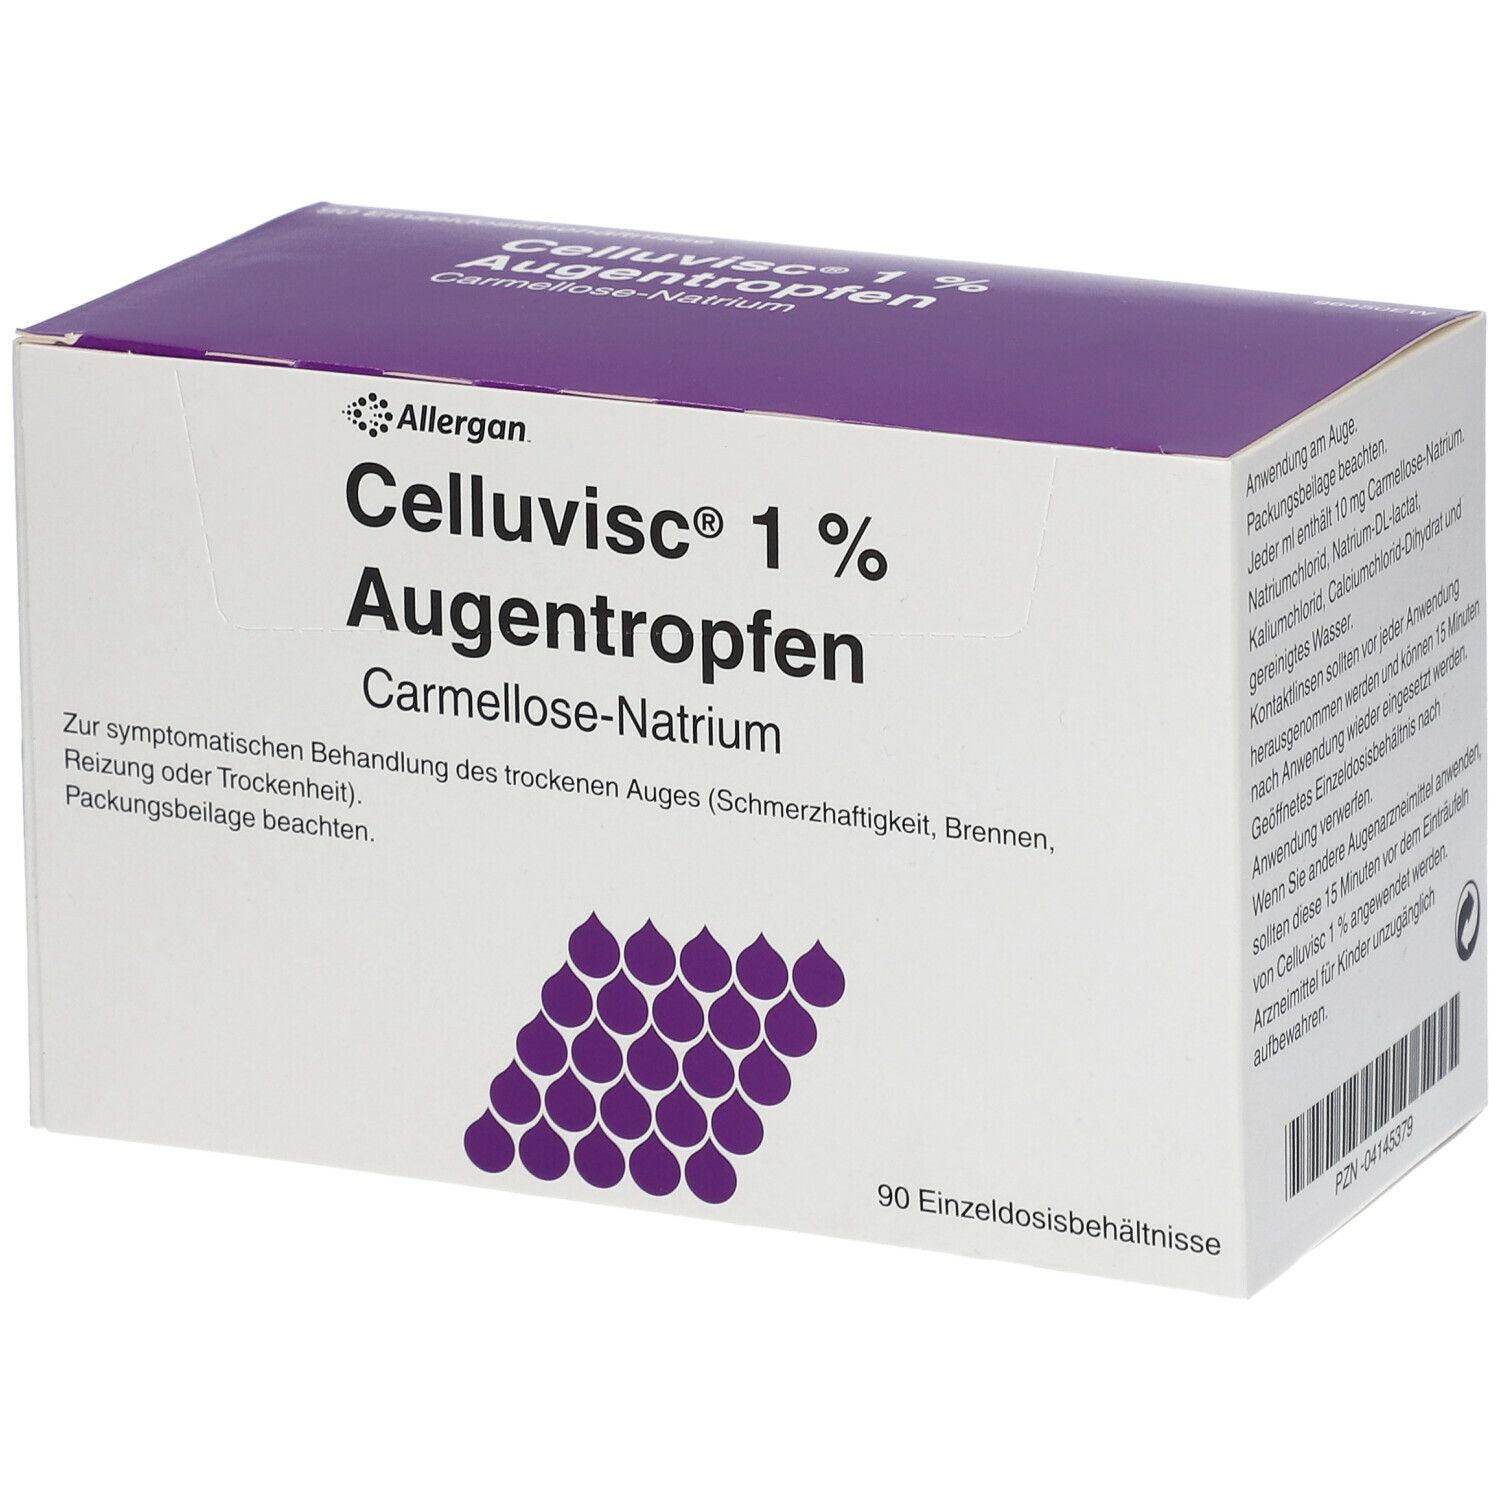 Celluvisc® 1% Augentropfen